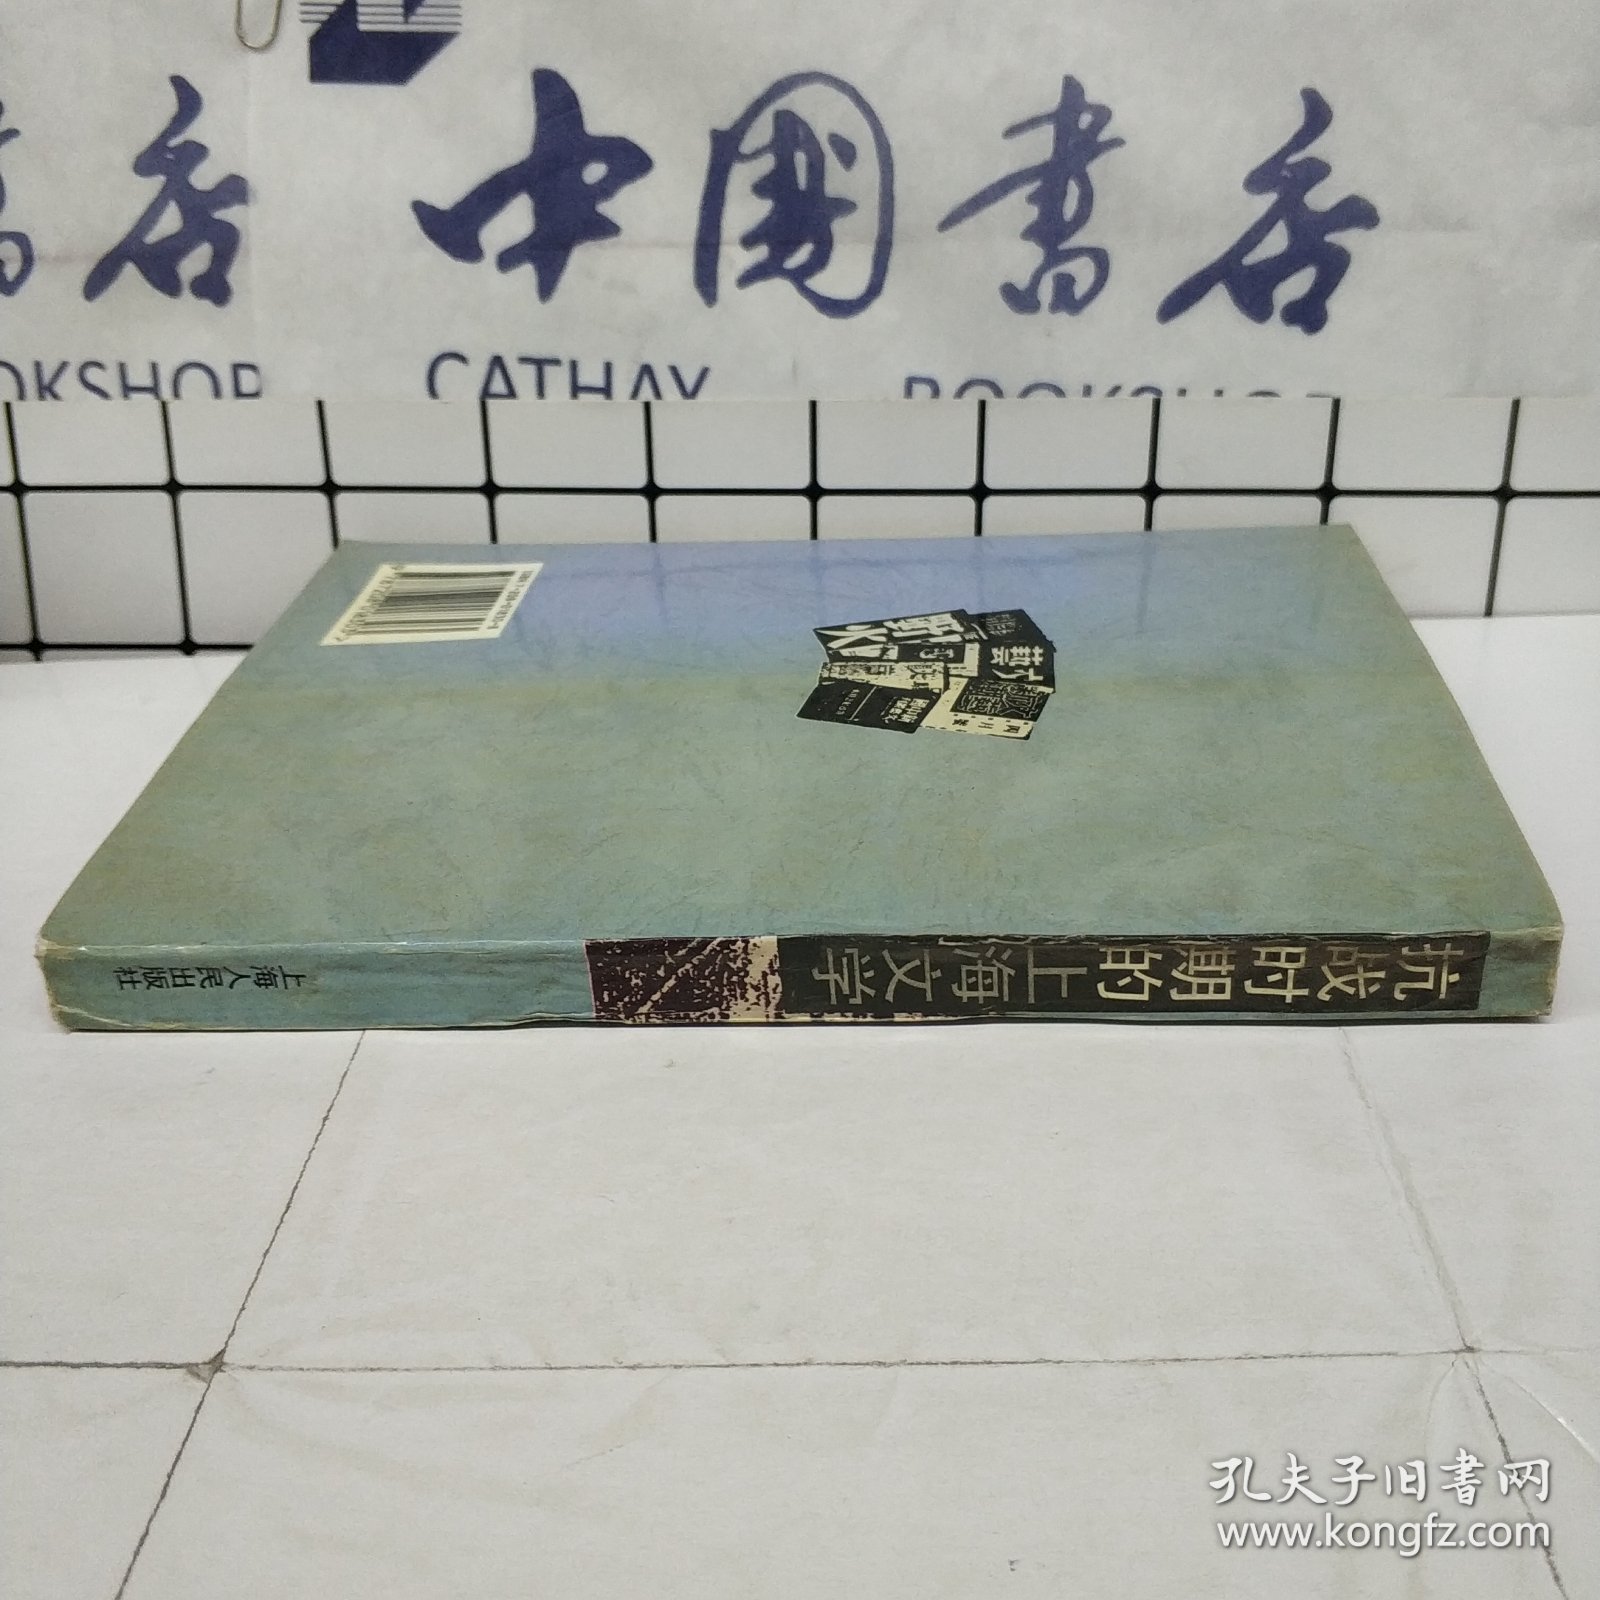 抗战时期的上海文学k2